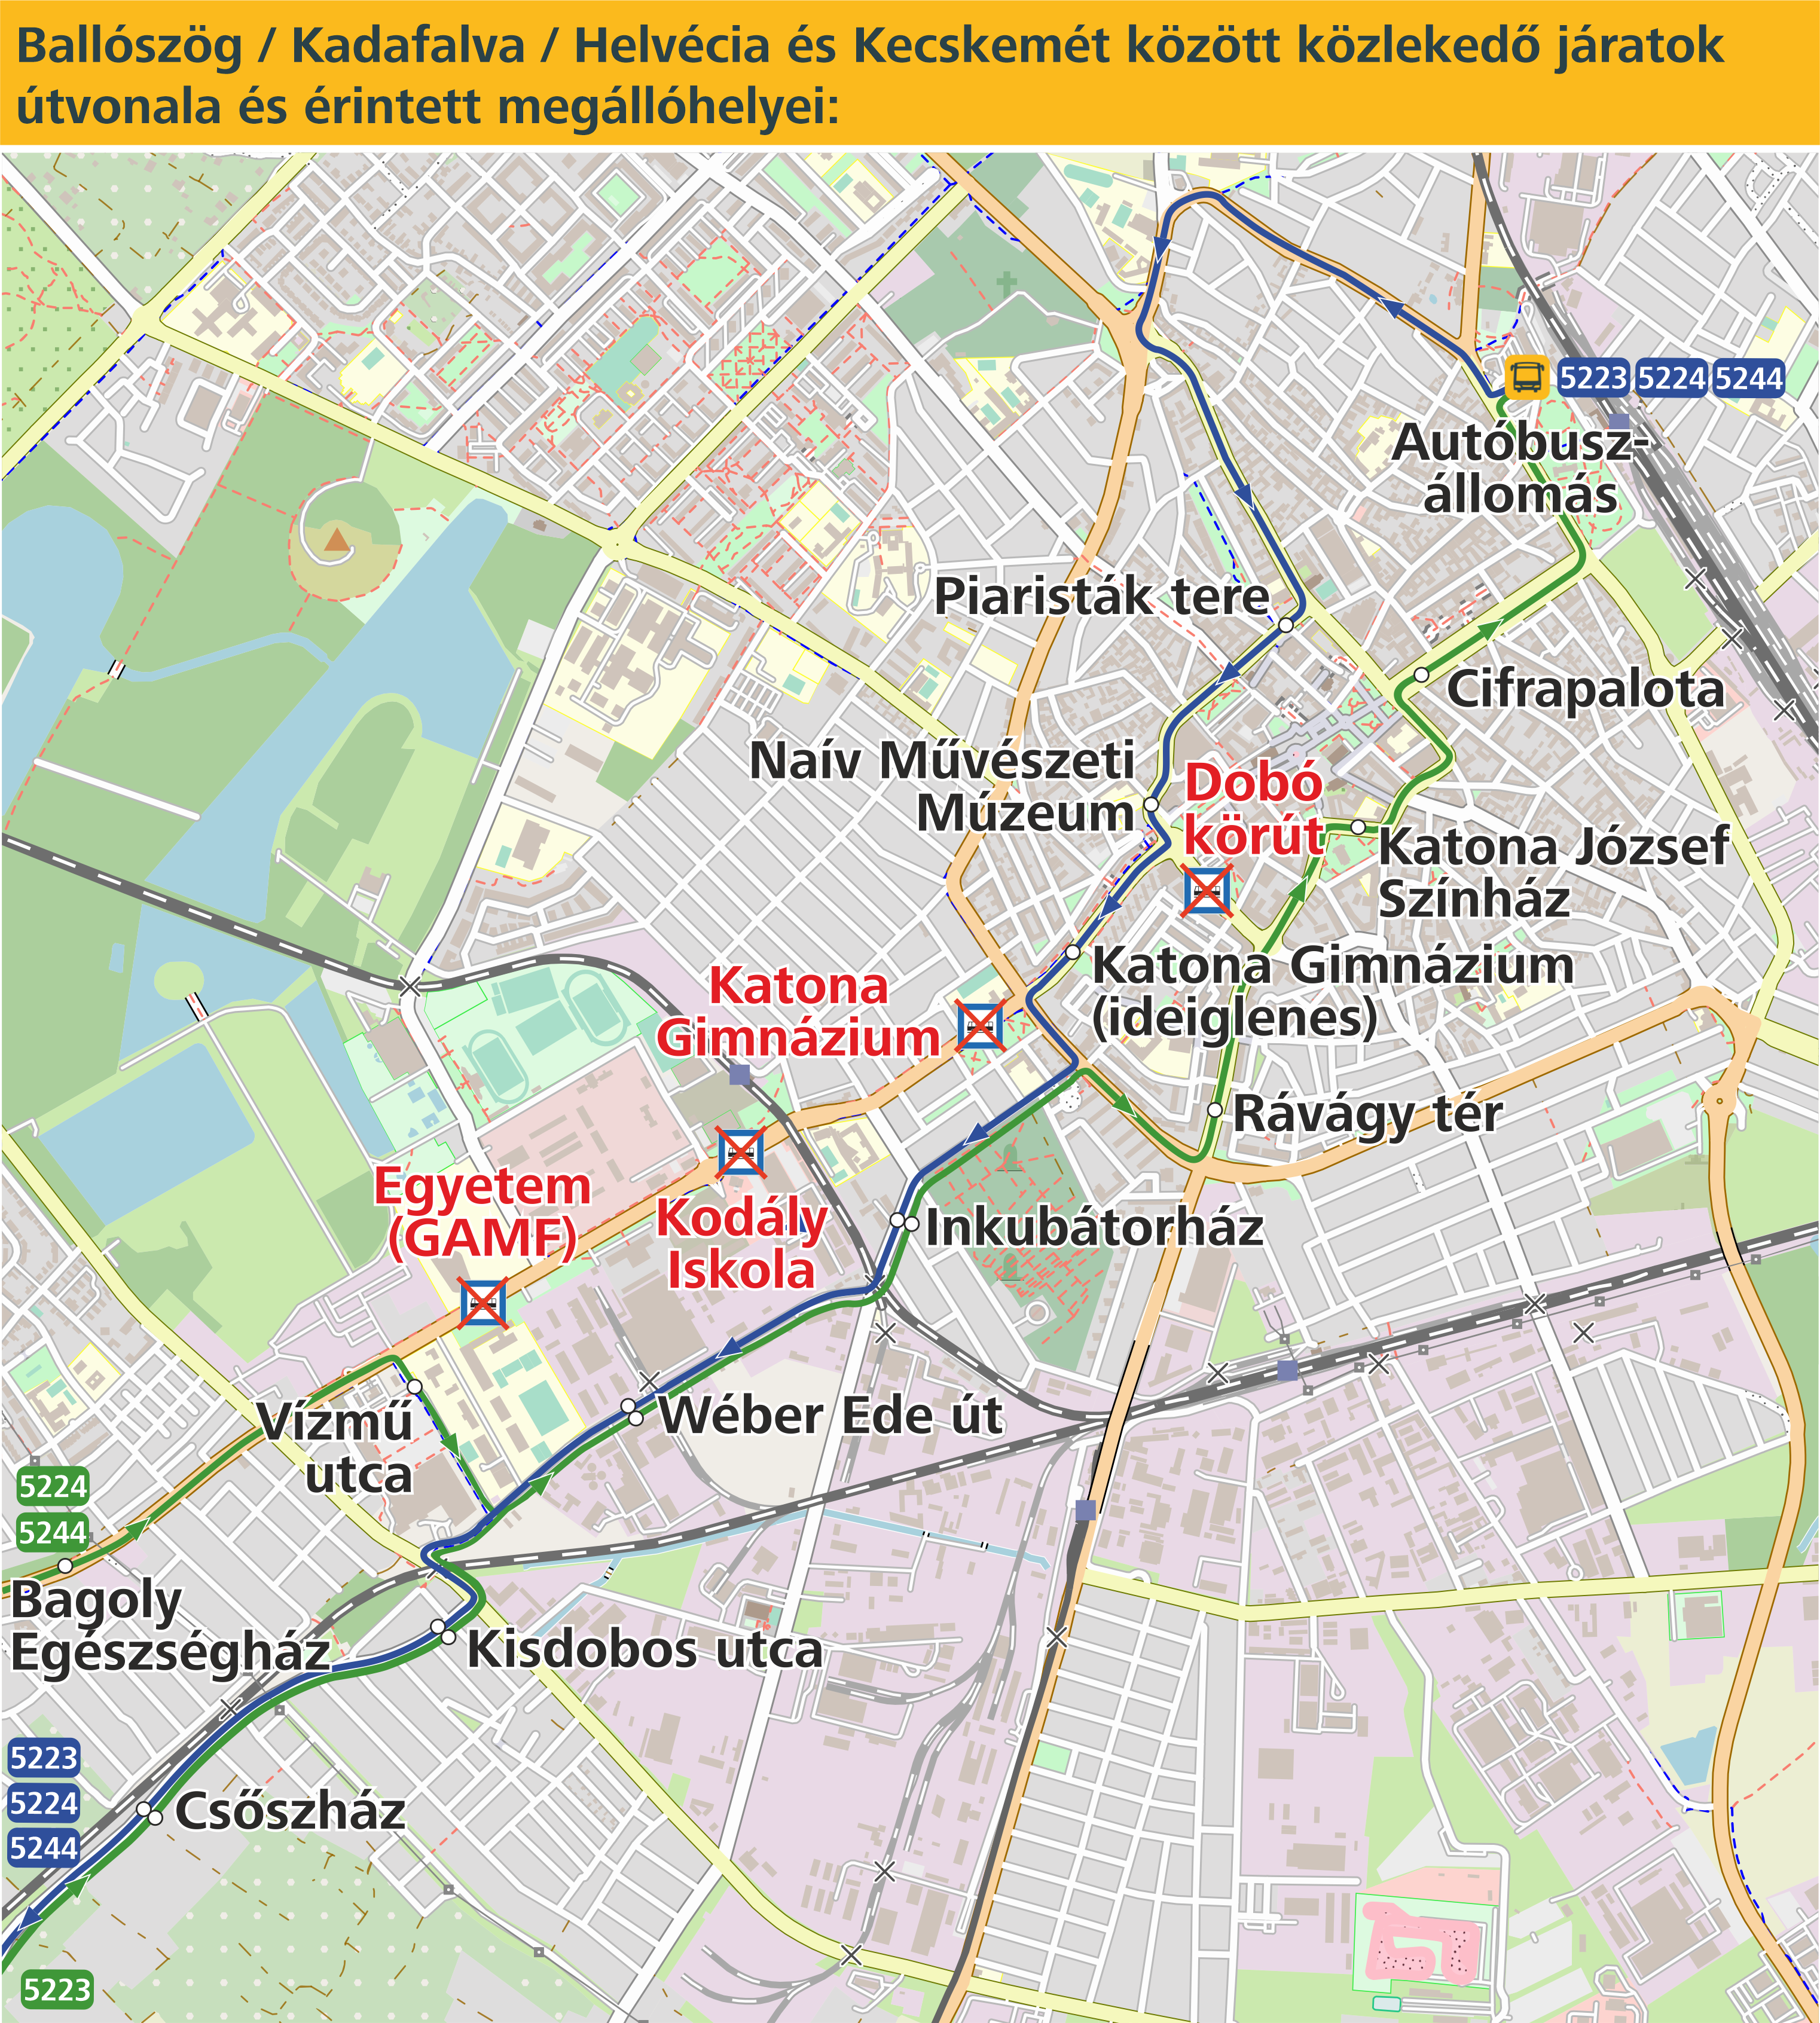 Ballószög, Kadafalva, Helvécia és Kecskemét között közéeledő járatok útvonala és érintett megállóhelyeinek térképe.